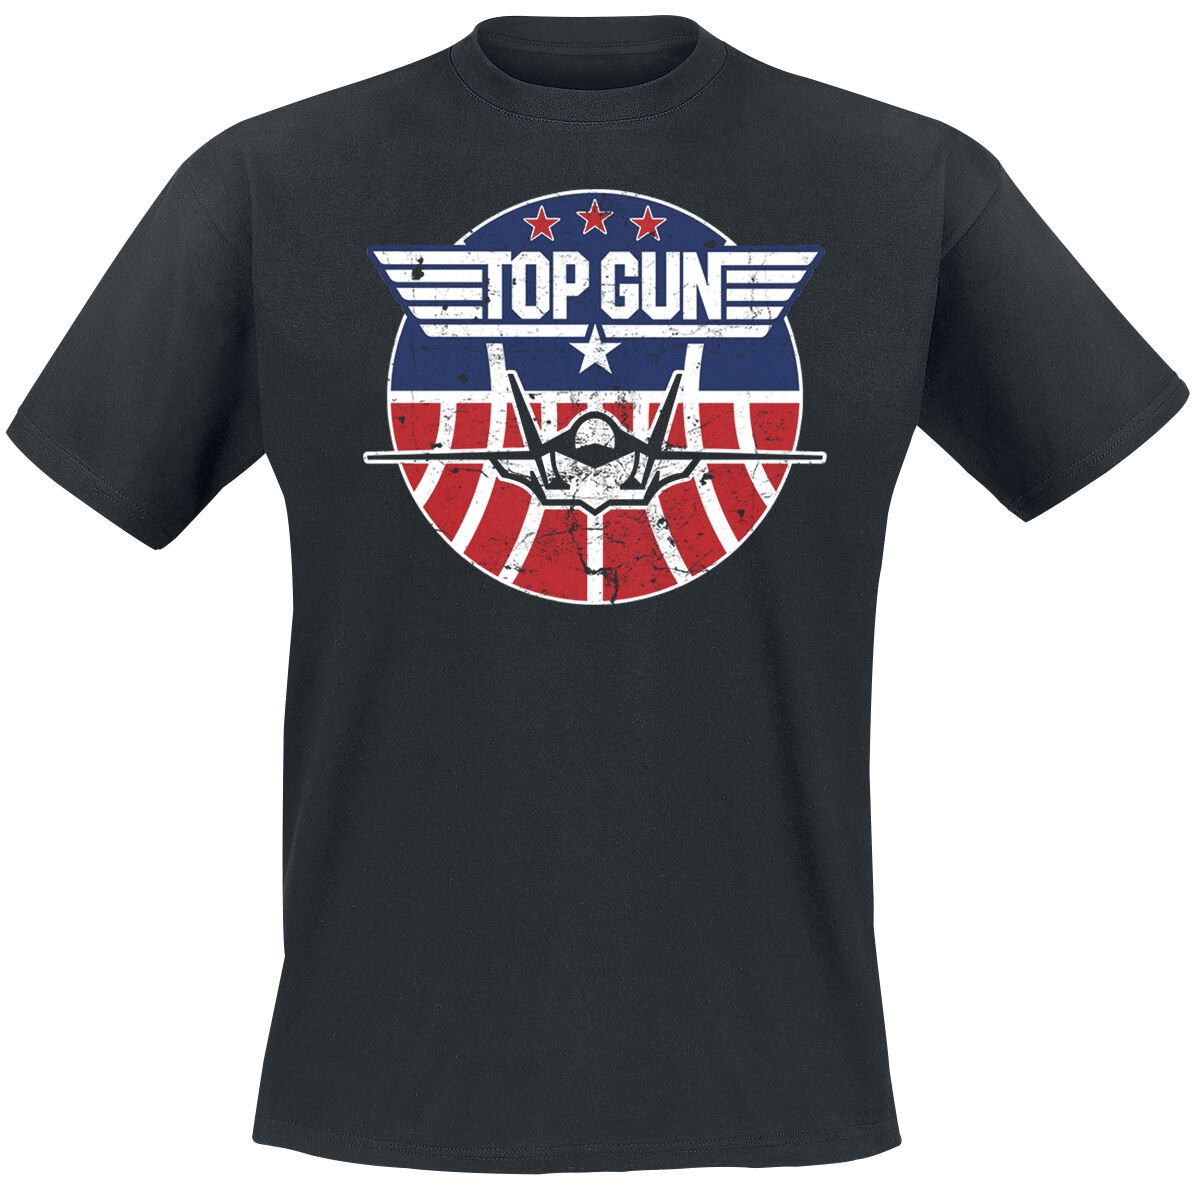 Image of T-Shirt di Top Gun - Maverick - Tomcat - S a 3XL - Uomo - nero